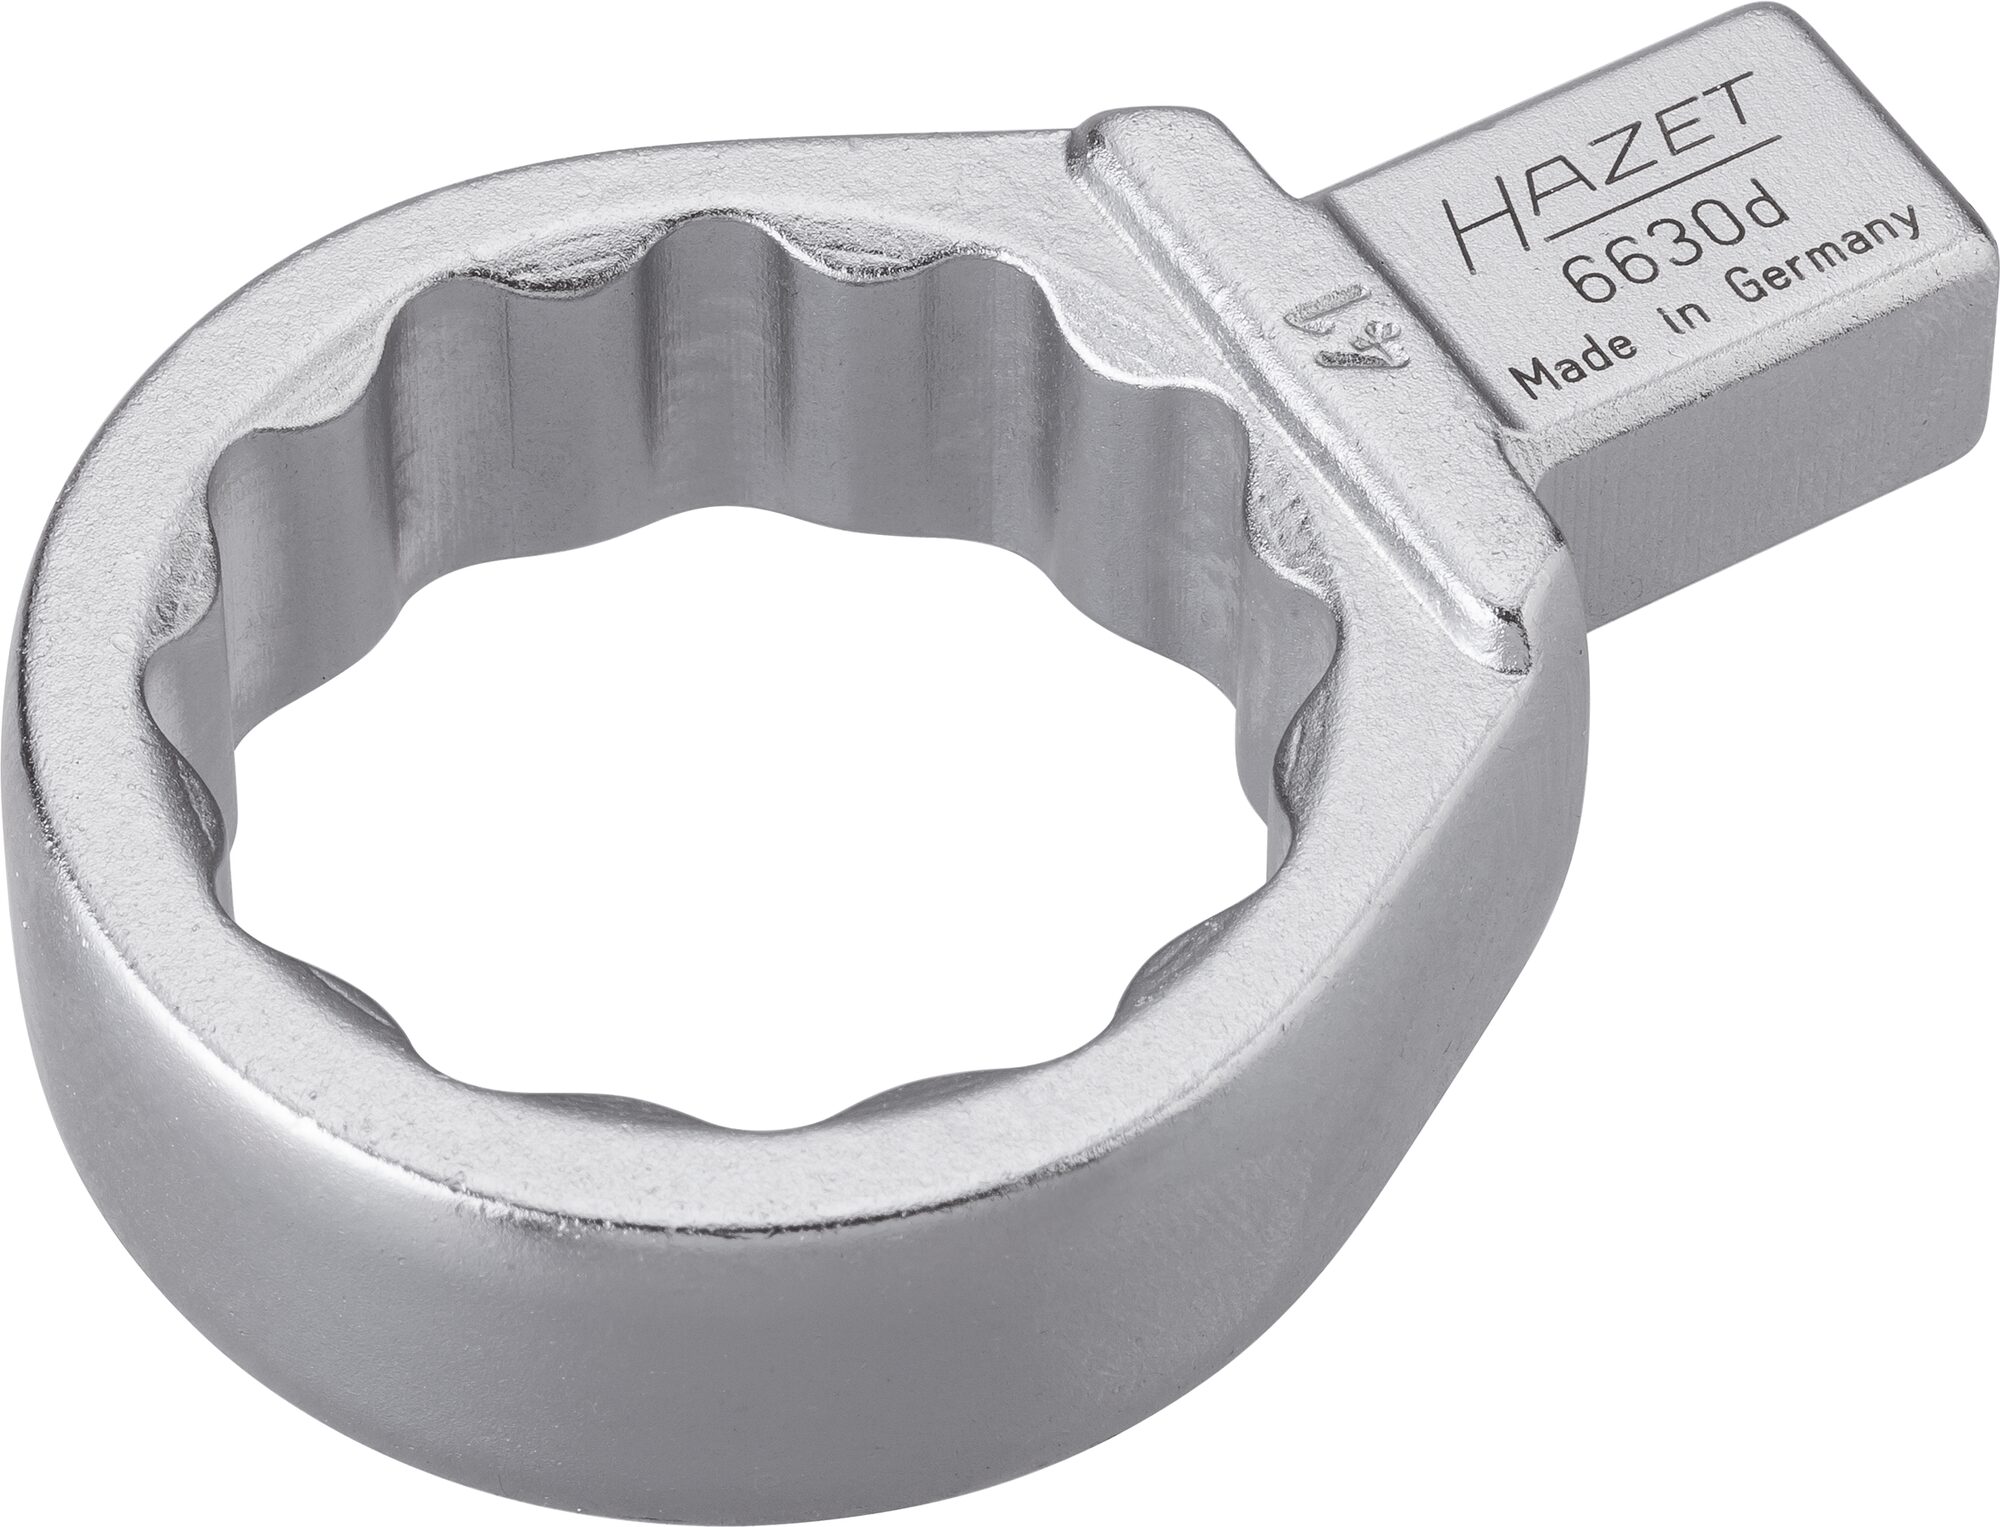 HAZET Einsteck-Ringschlüssel 6630D-41 · Einsteck-Vierkant 14 x 18 mm · Außen Doppel-Sechskant-Tractionsprofil · 41 mm